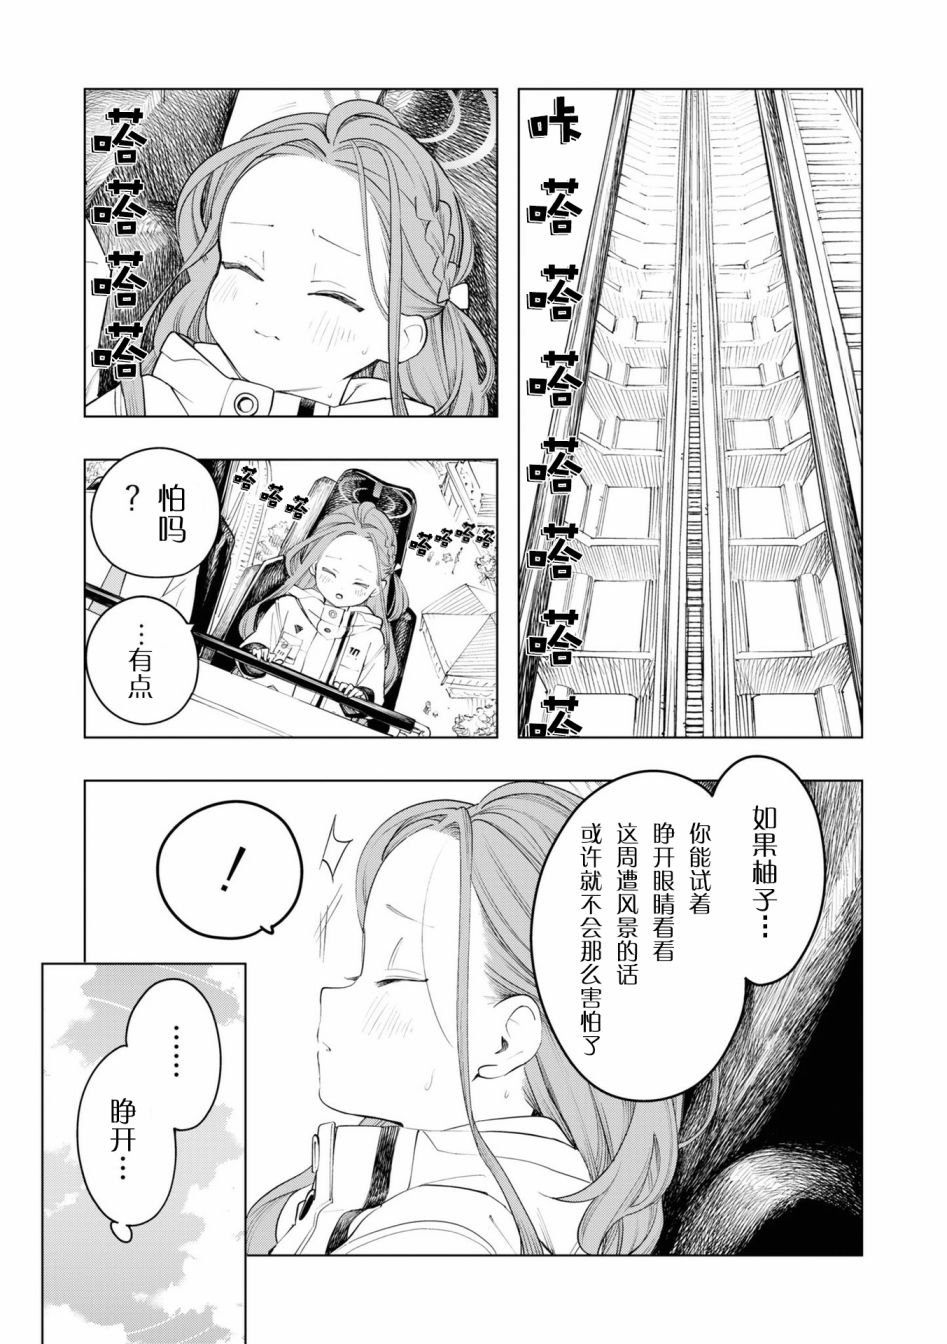 碧藍檔案漫畫集VOL3 - 恐怖遊戲開發部 - 1